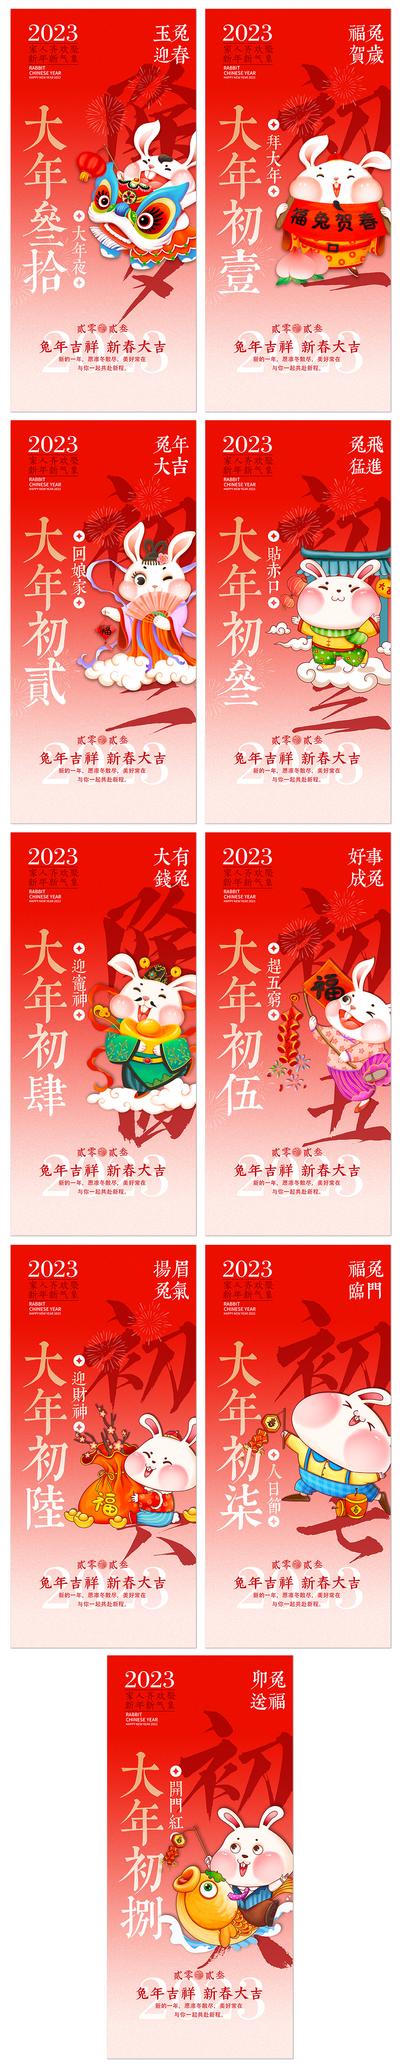 南门网 海报 地产 中国传统节日 春节  除夕  兔年 回娘家 迎财神  系列  